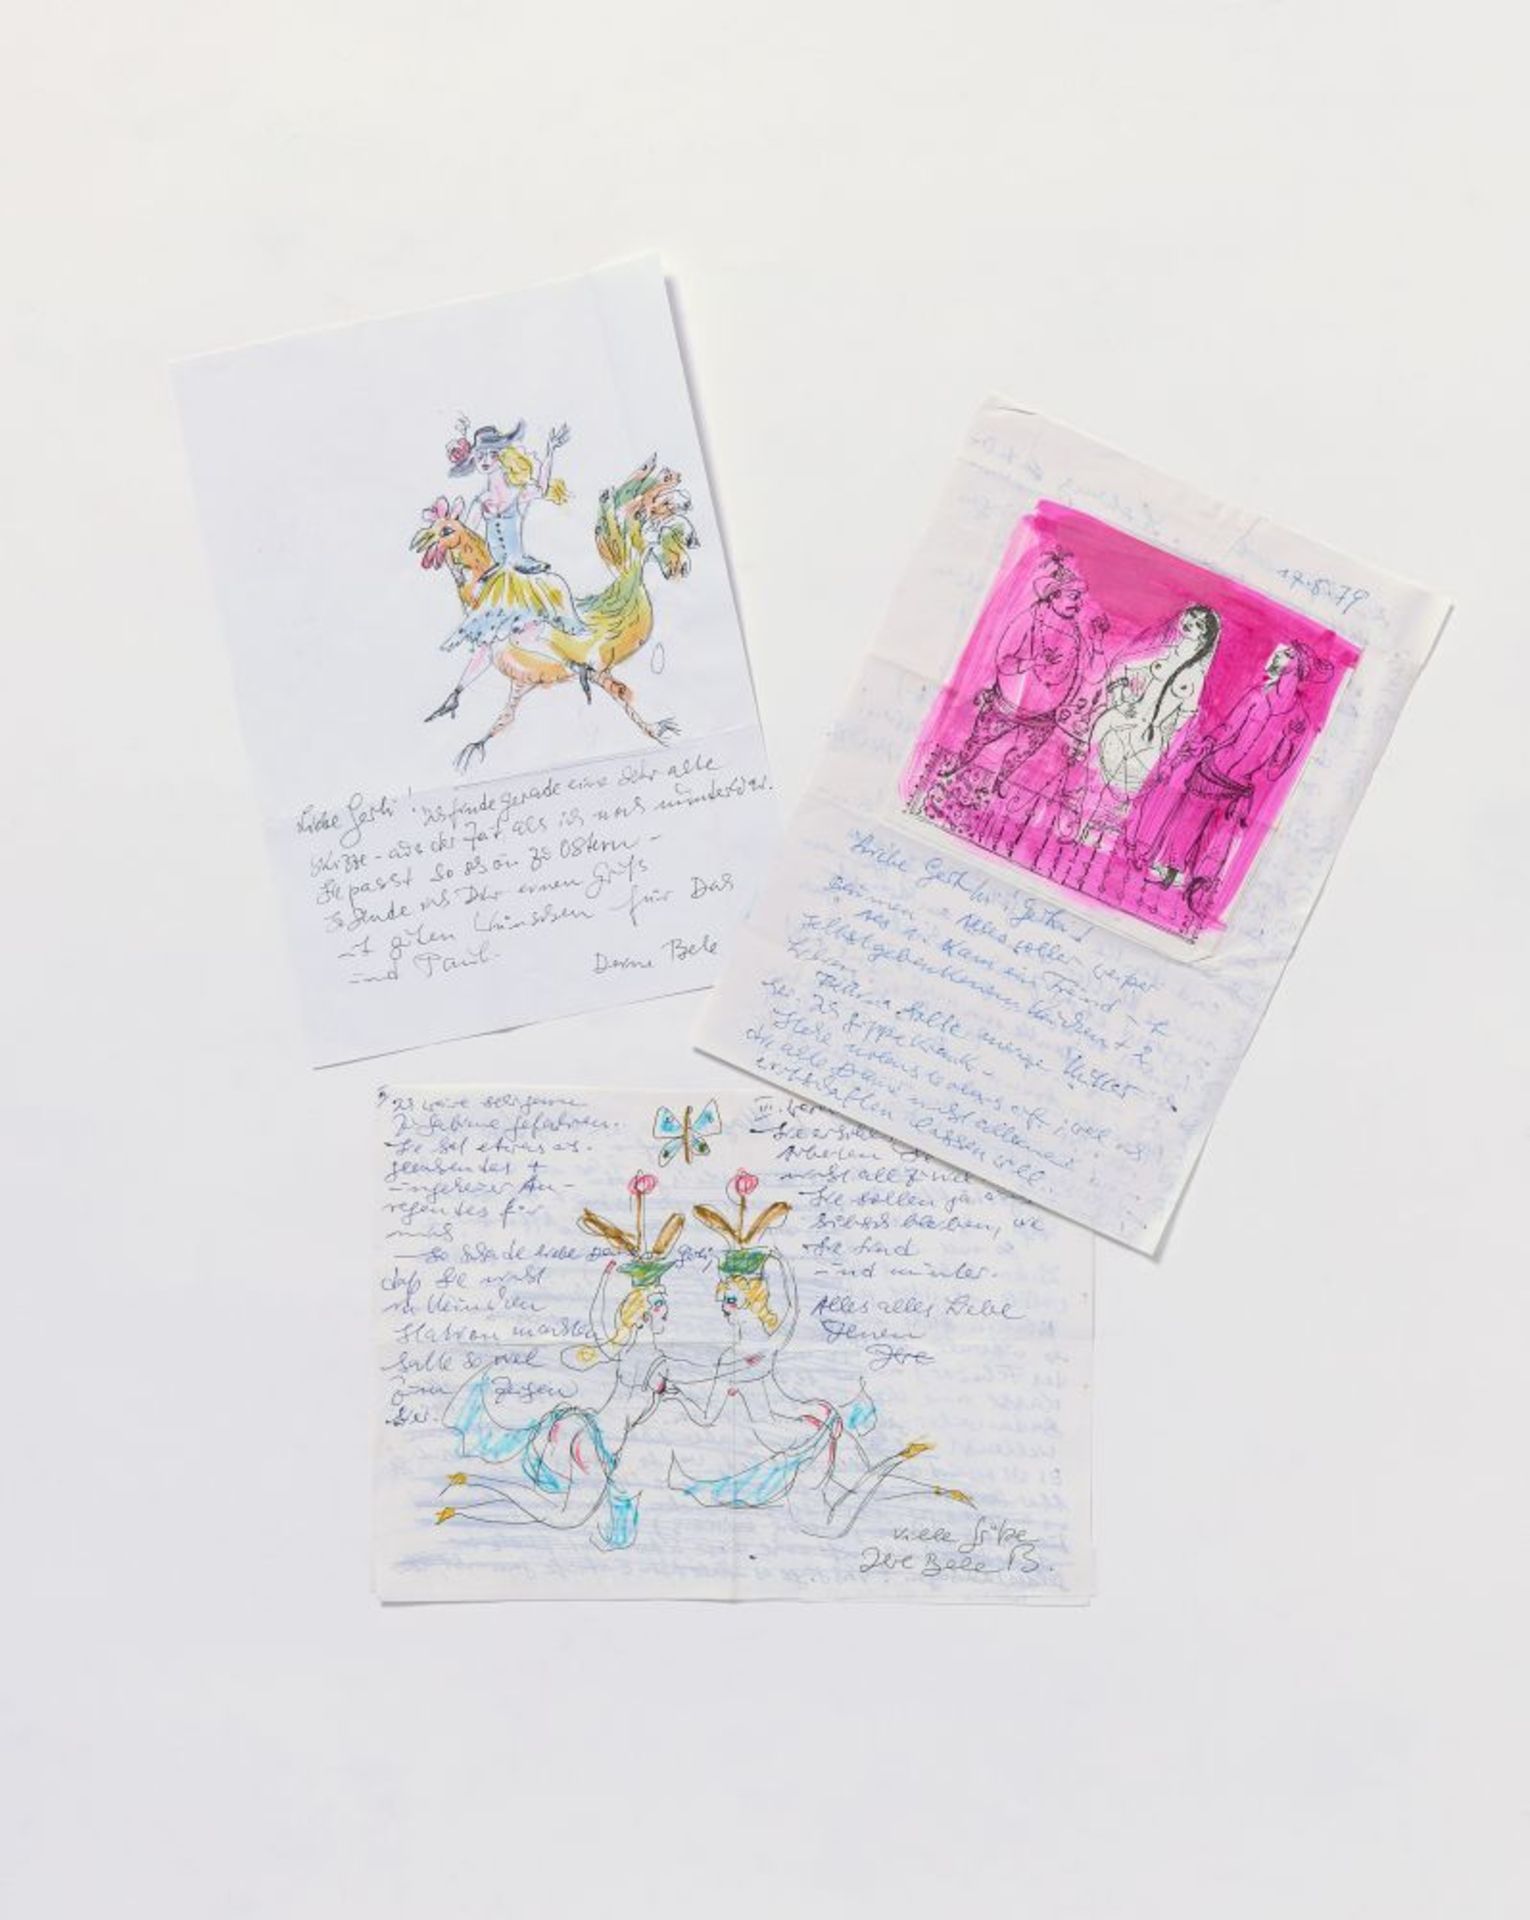 Bele Bachem, 40 eigh. Briefe, Karten, t. mit Zeichnungen. Von ca. 1974 bis um 2003. - An Gertrude Me - Bild 7 aus 12